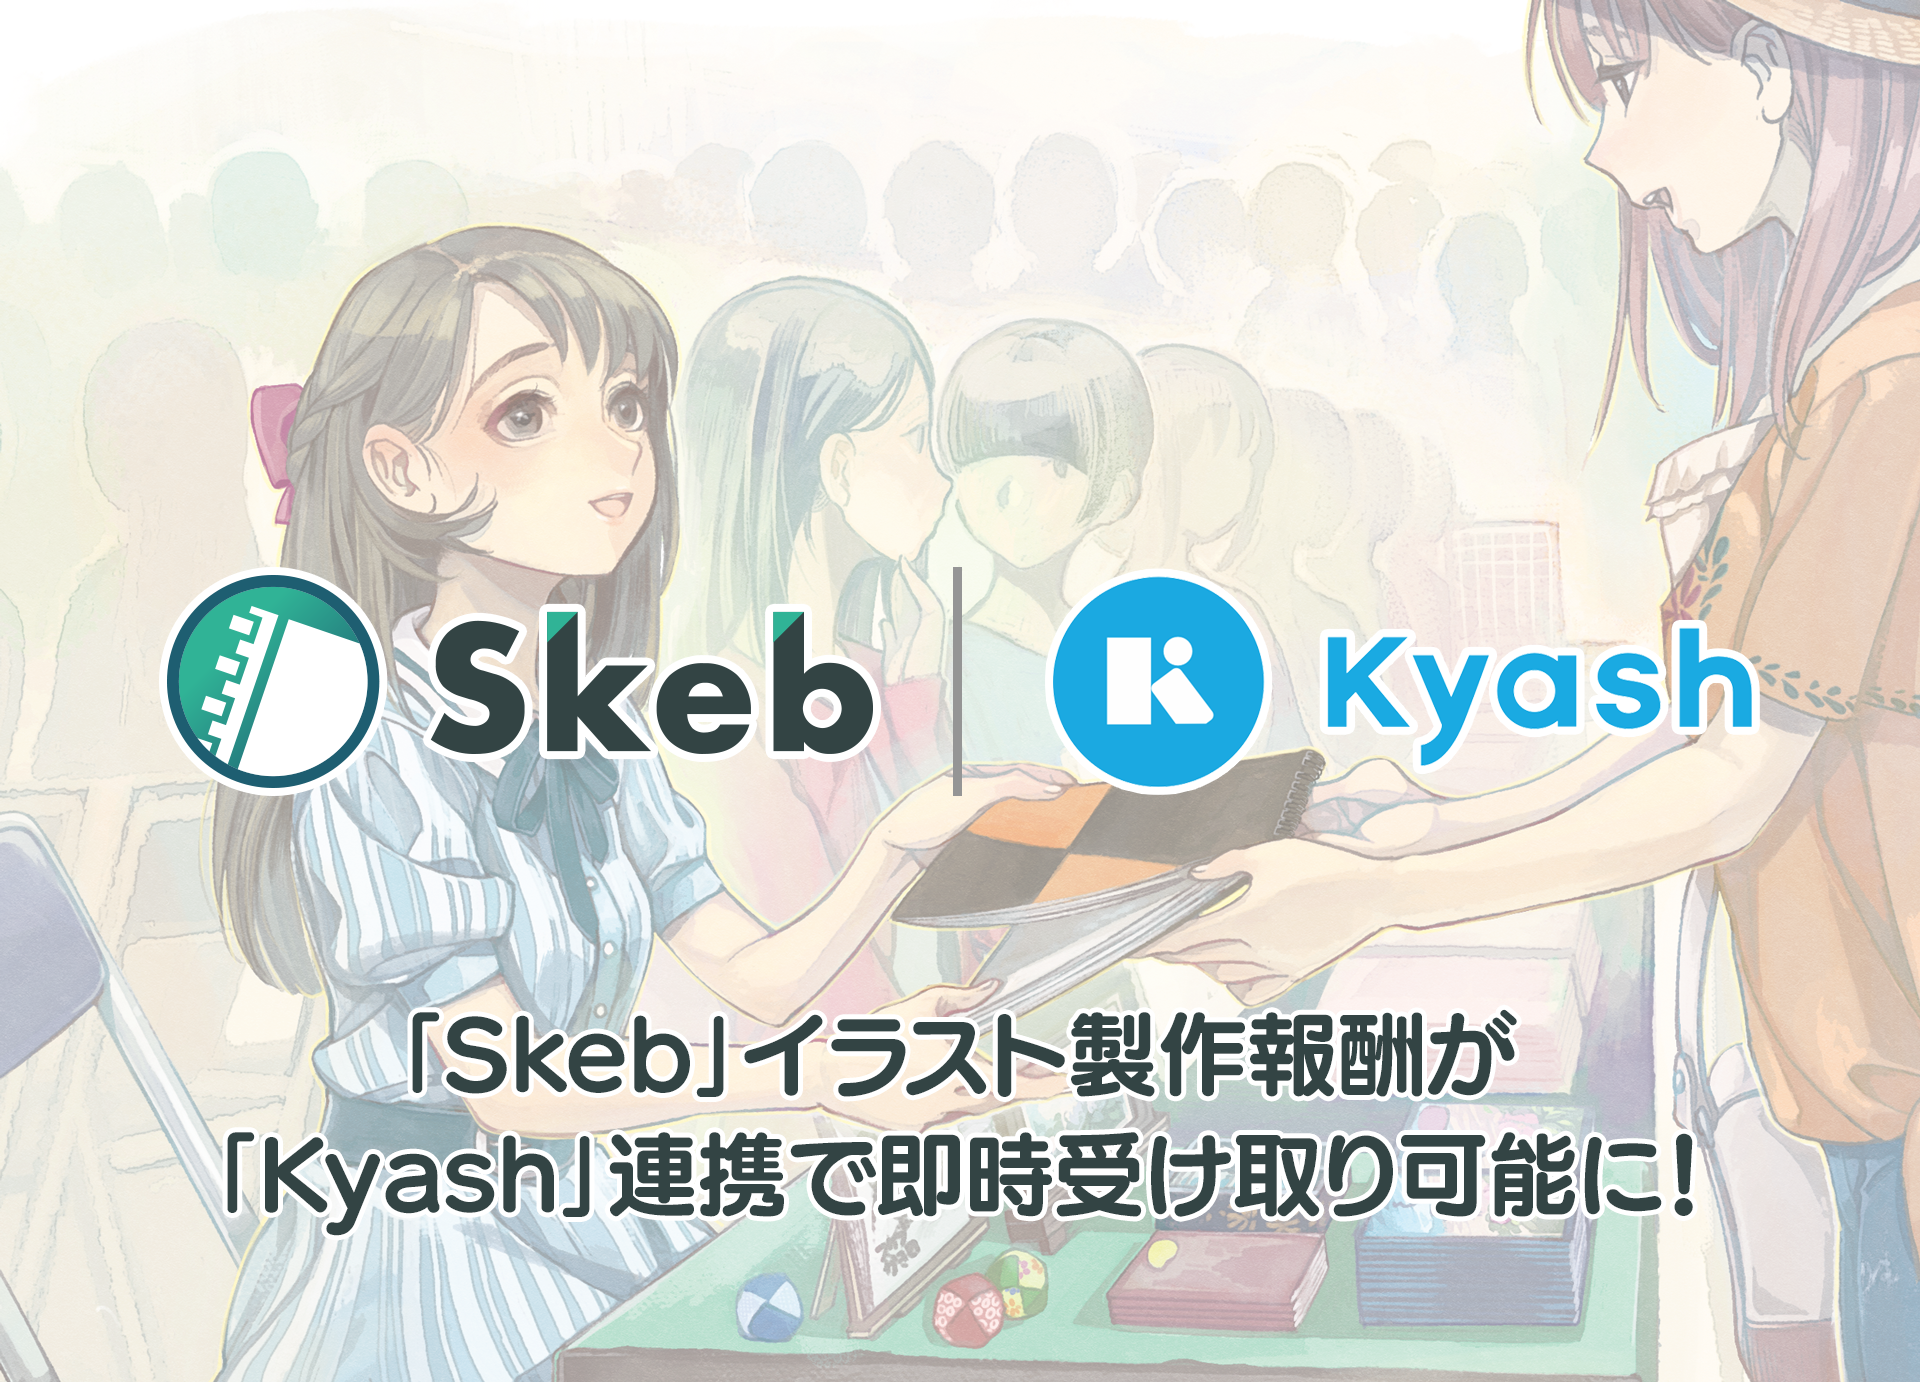 イラストコミッションサービス Skeb の報酬がウォレットアプリ Kyash で受け取り可能に 外神田商事株式会社のプレスリリース